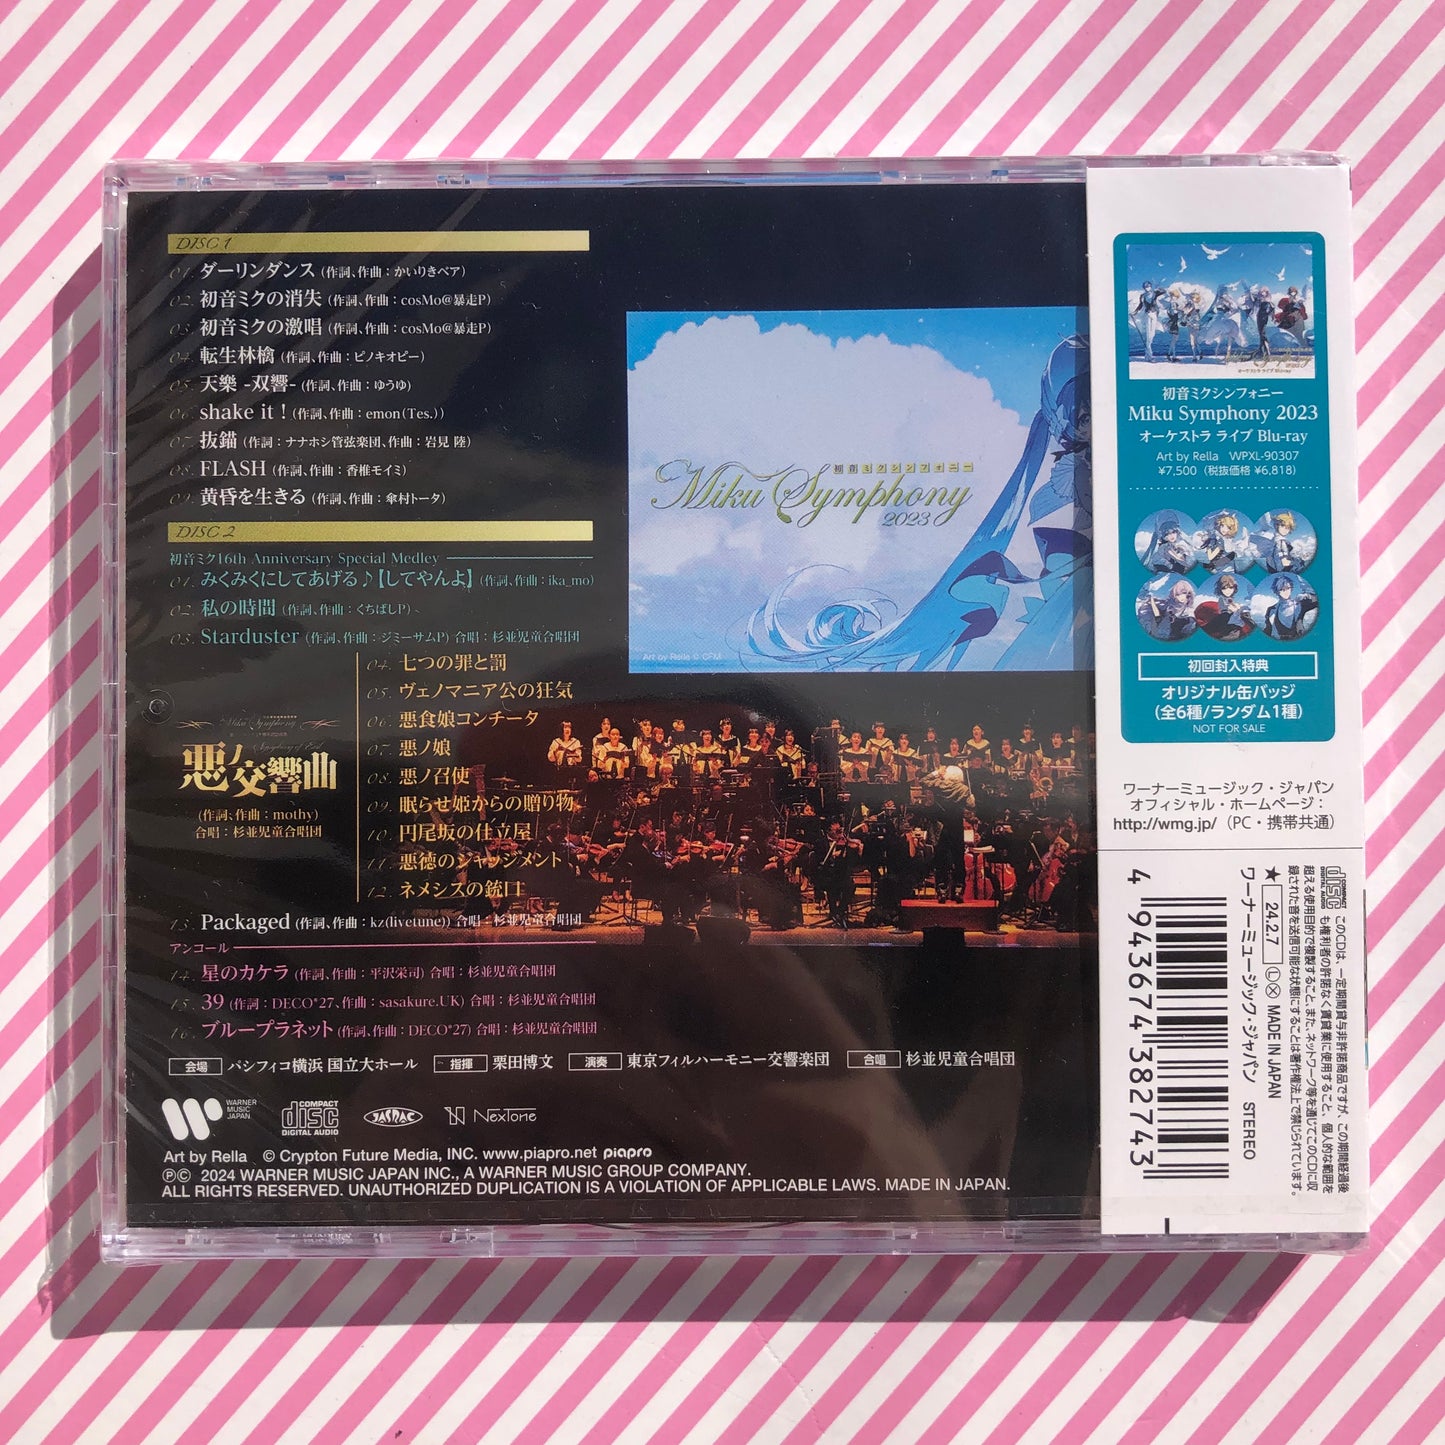 Vocaloid Hatsune Miku Symphony 2023 Orchestra Live (2 CD)